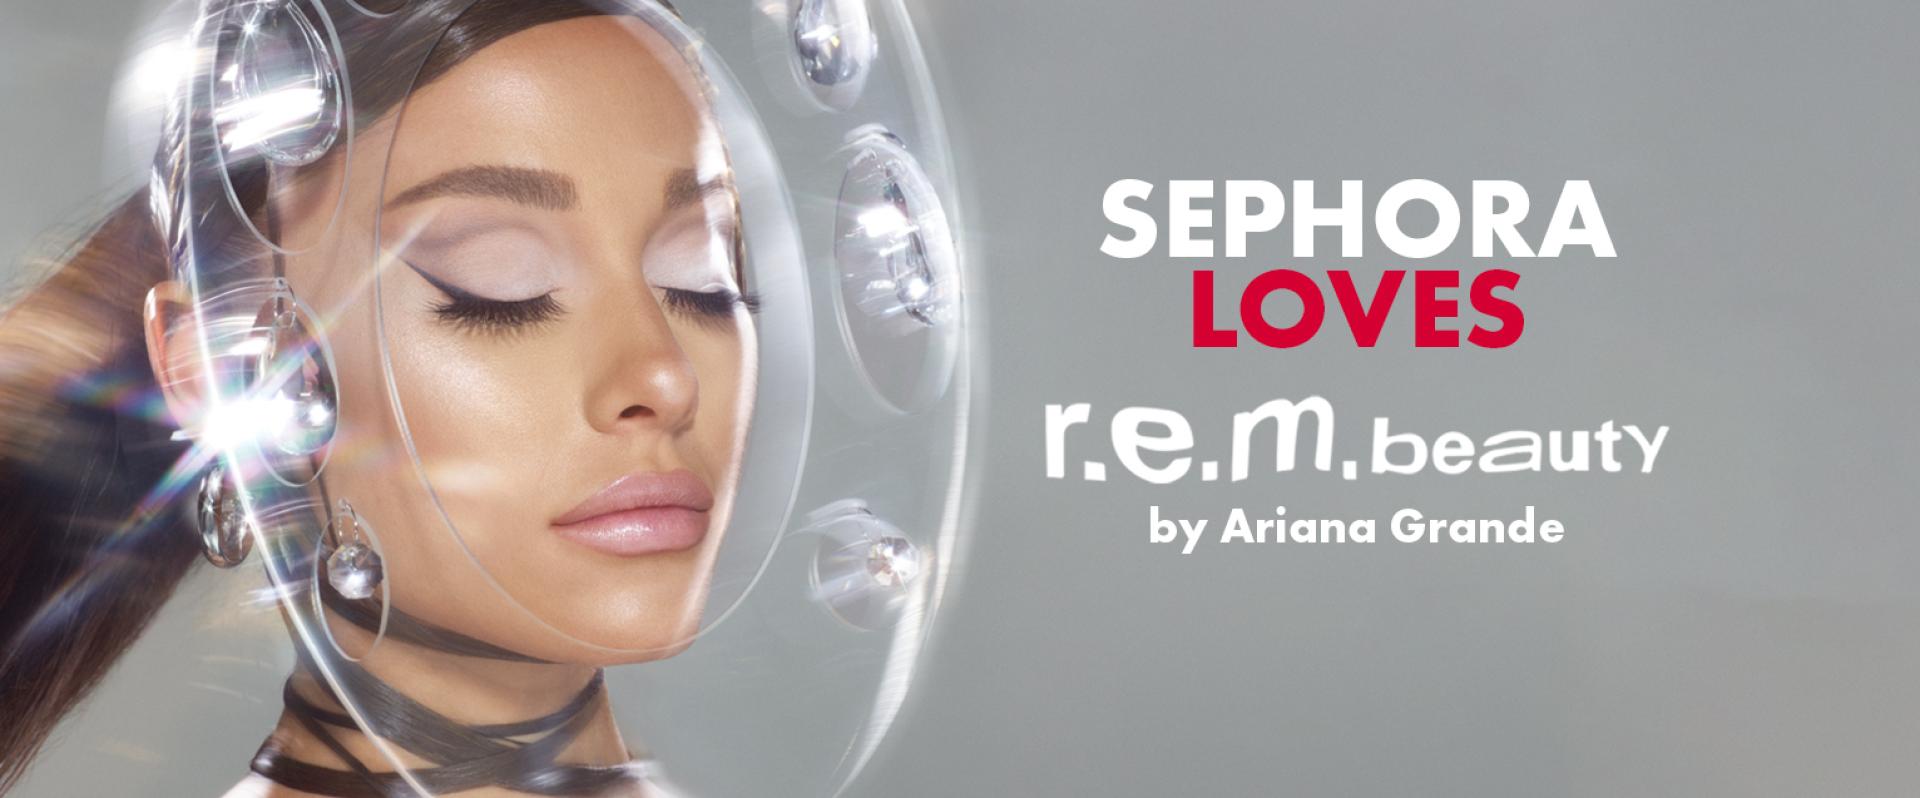 Sephora: Premiera r.e.m. beauty - marki stworzonej przez Arianę Grande 